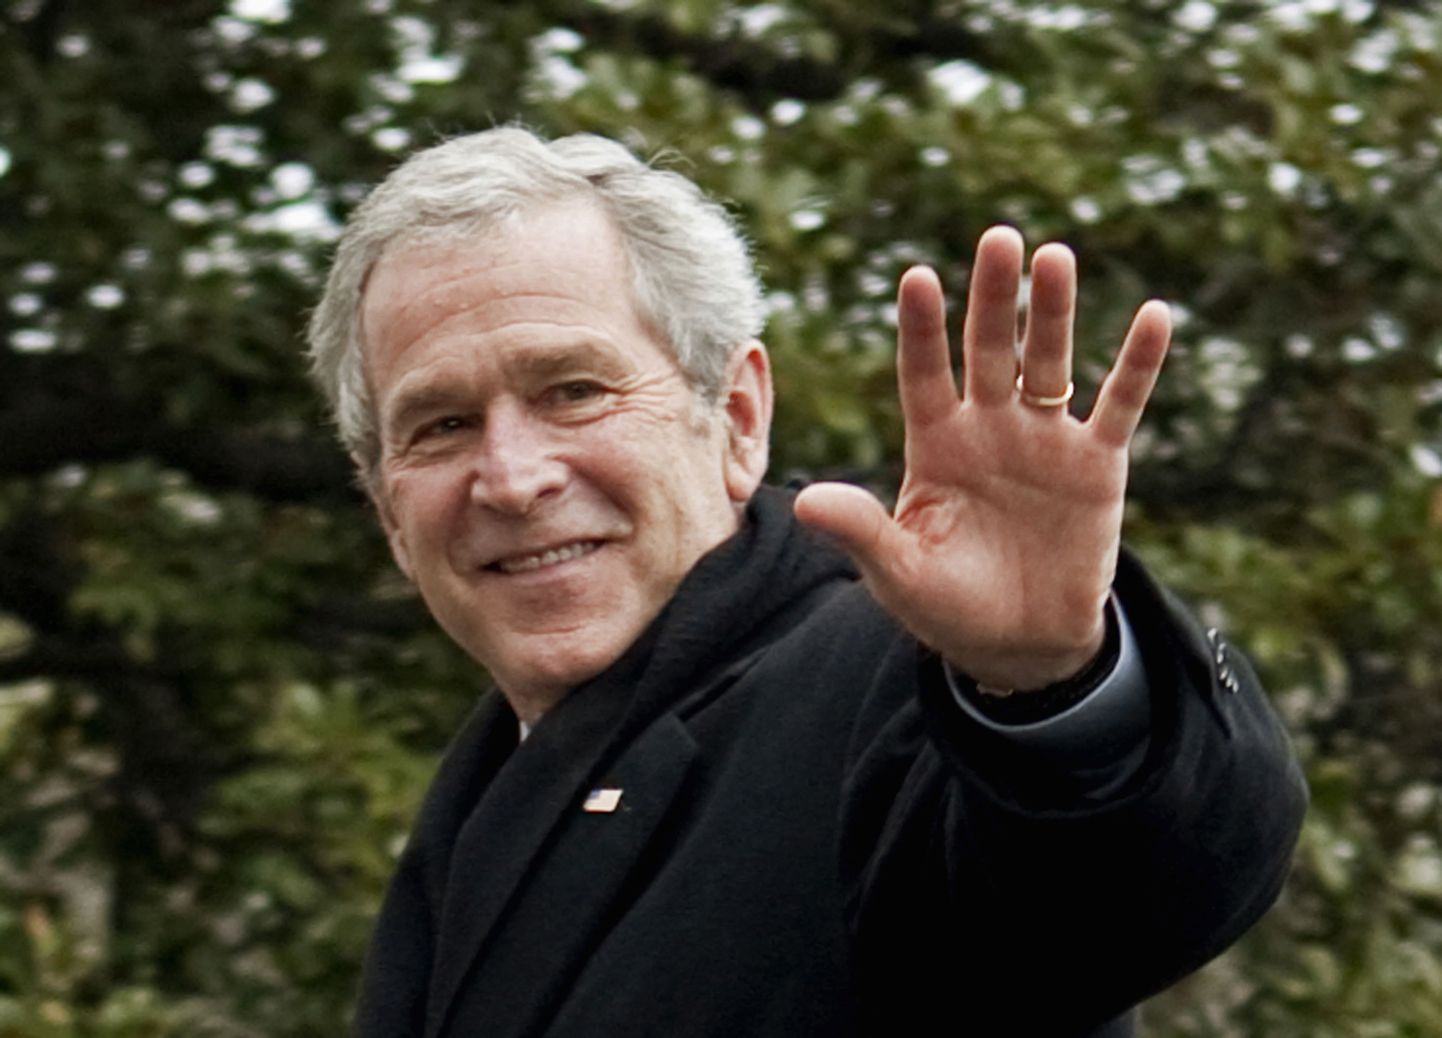 George W. Bush